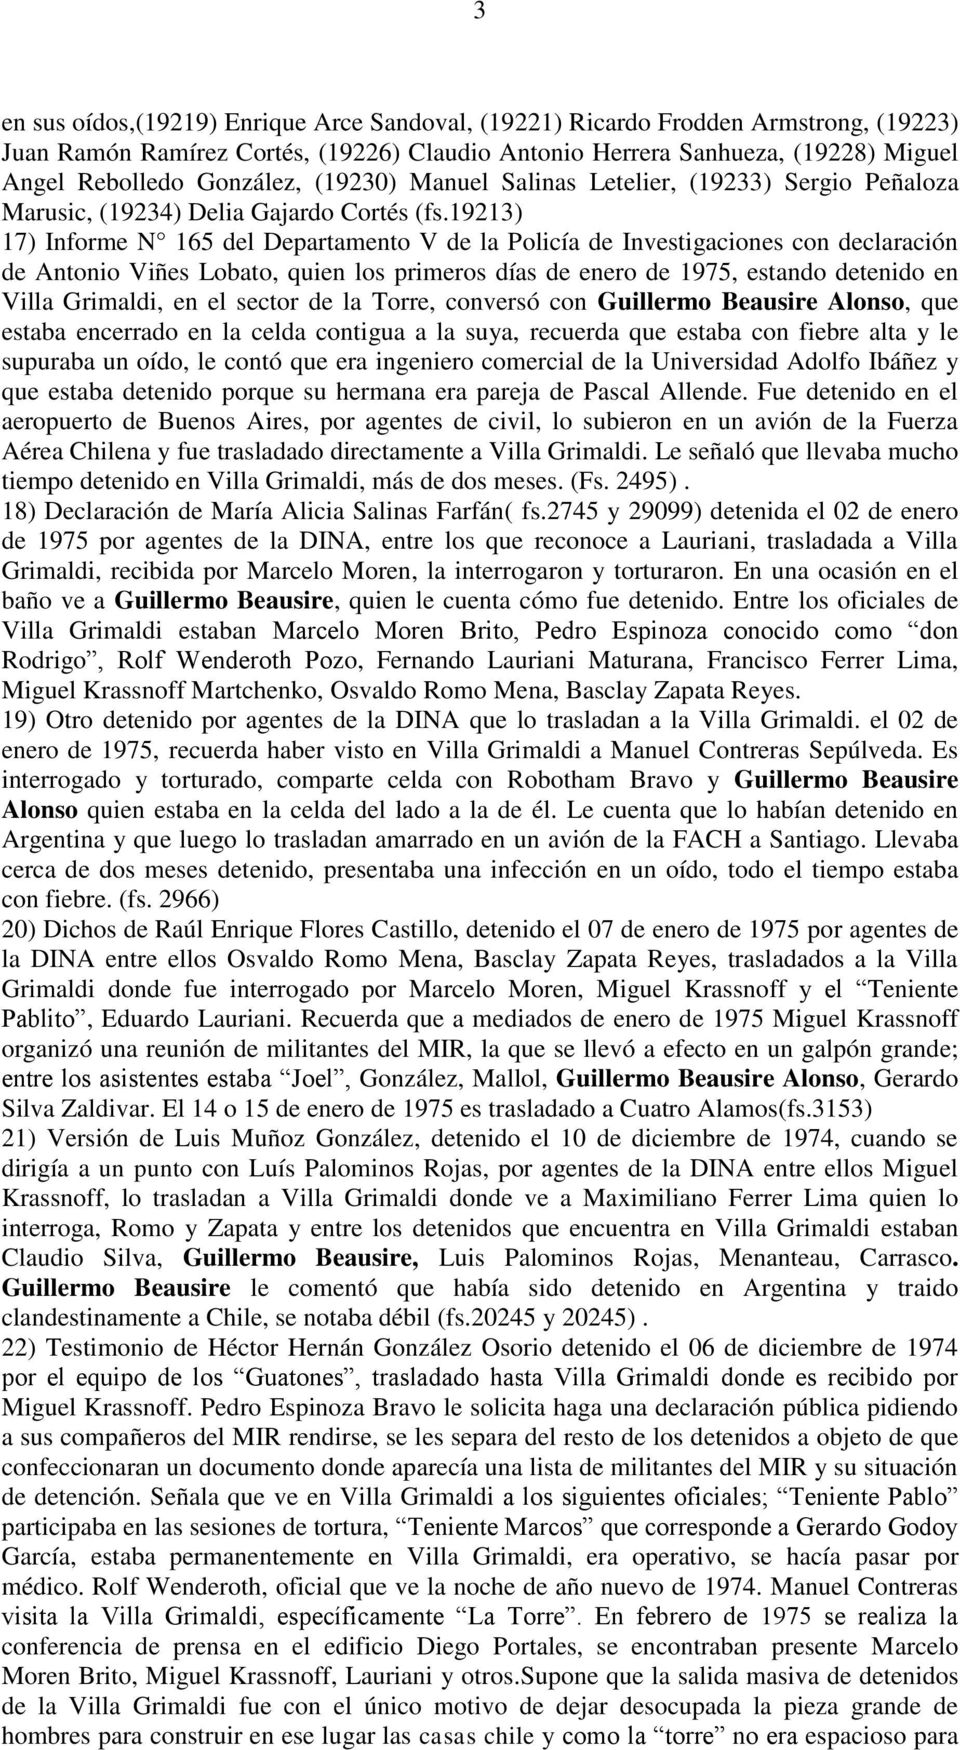 19213) 17) Informe N 165 del Departamento V de la Policía de Investigaciones con declaración de Antonio Viñes Lobato, quien los primeros días de enero de 1975, estando detenido en Villa Grimaldi, en